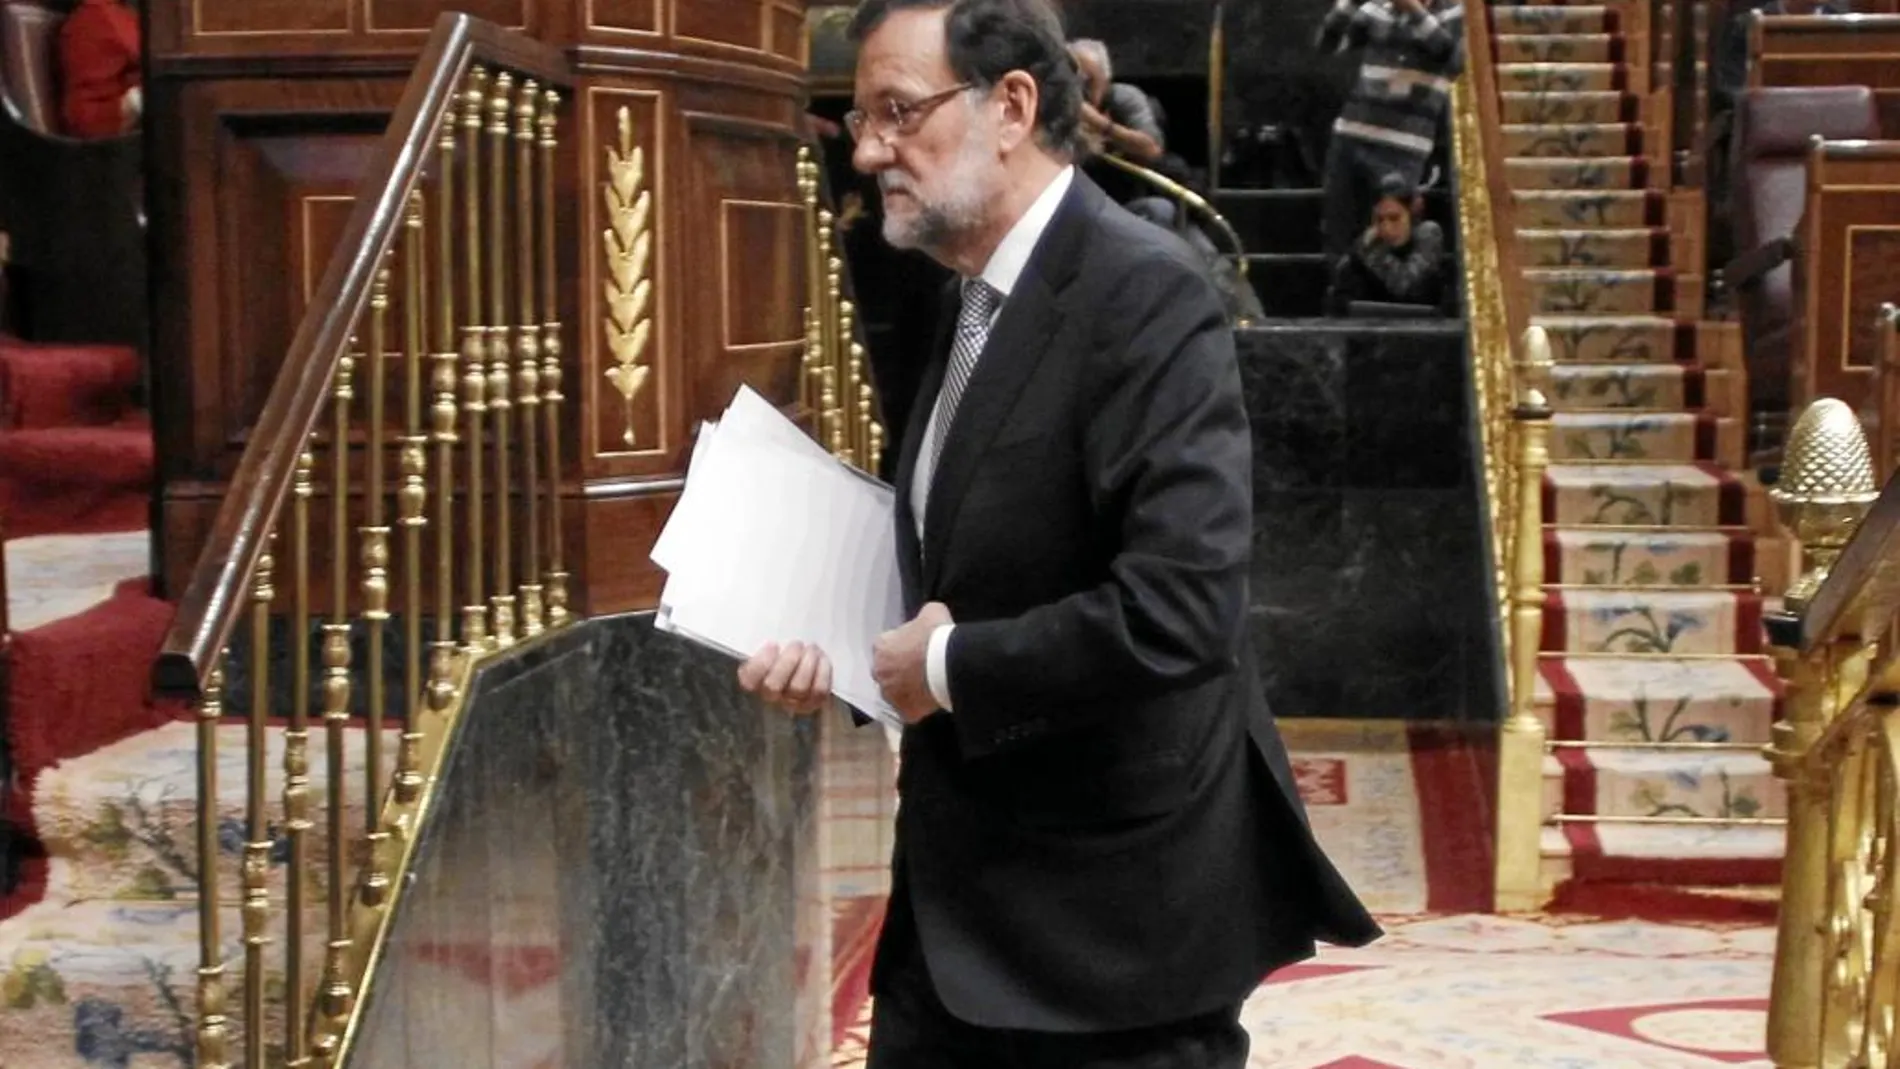 Mariano Rajoy se aproxima a la tribuna de oradores del Congreso durante el último Debate sobre el Estado de la Nación celebrado en febrero de 2015